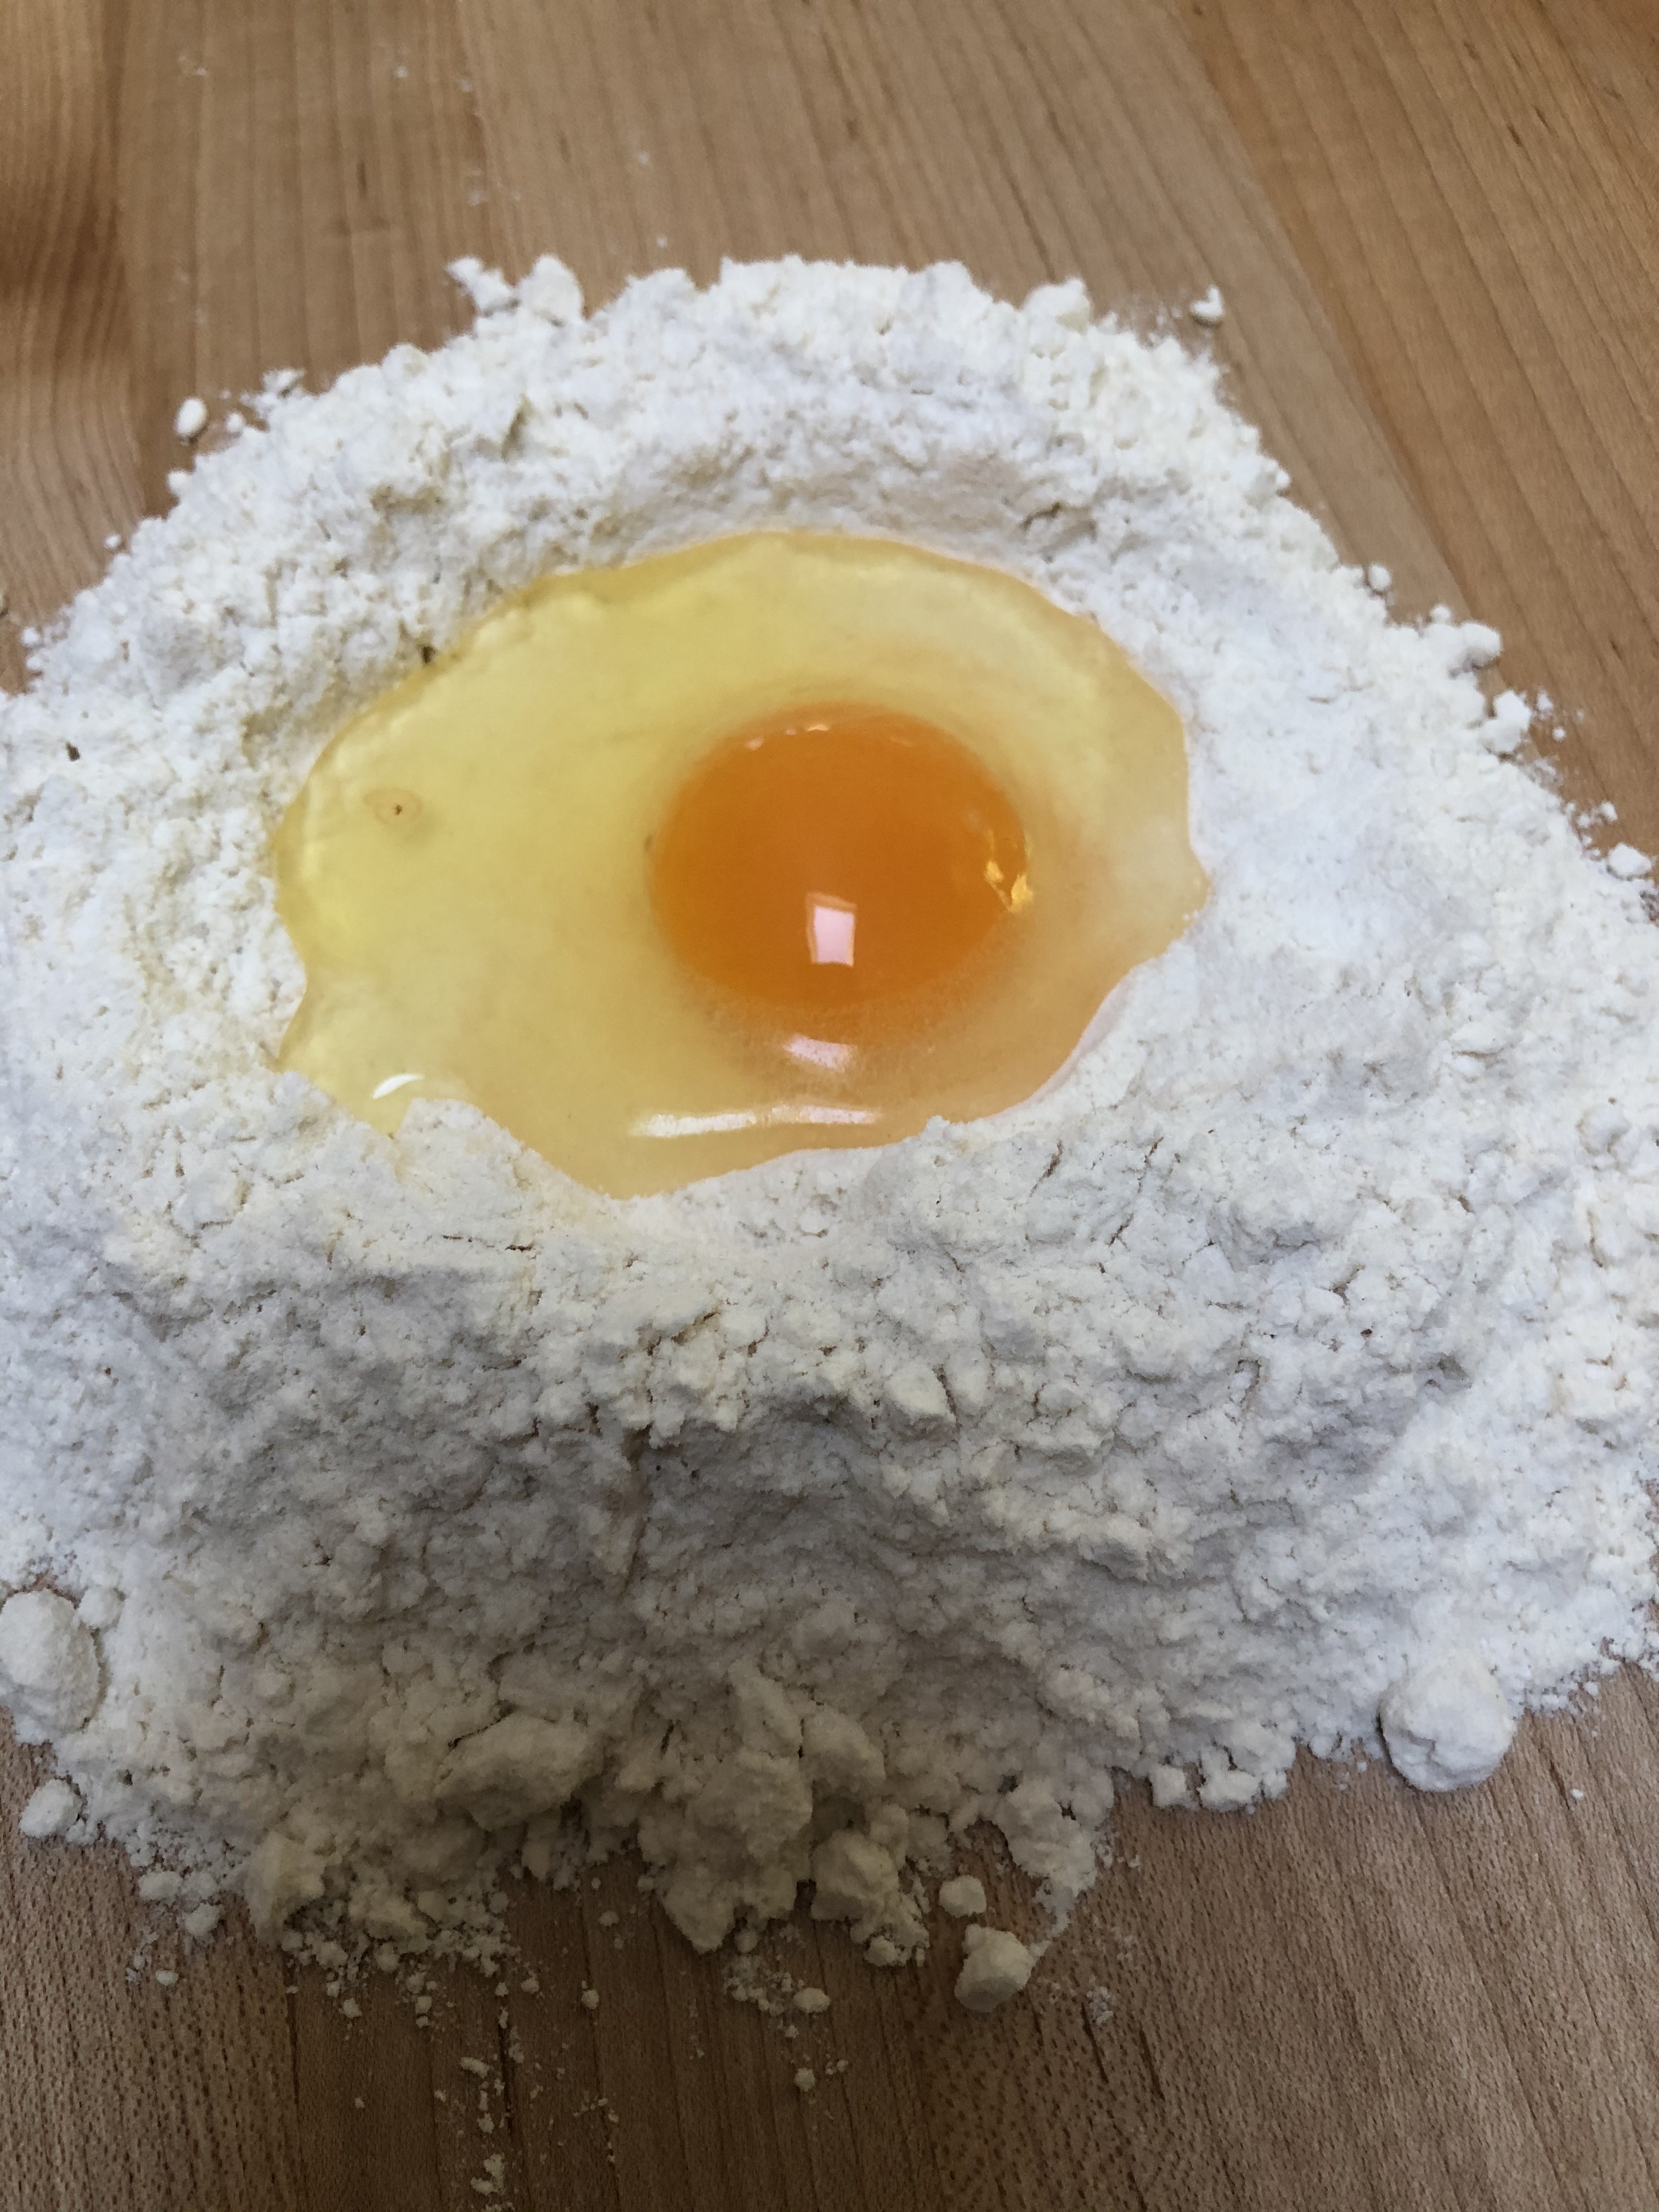 3. flour well with egg